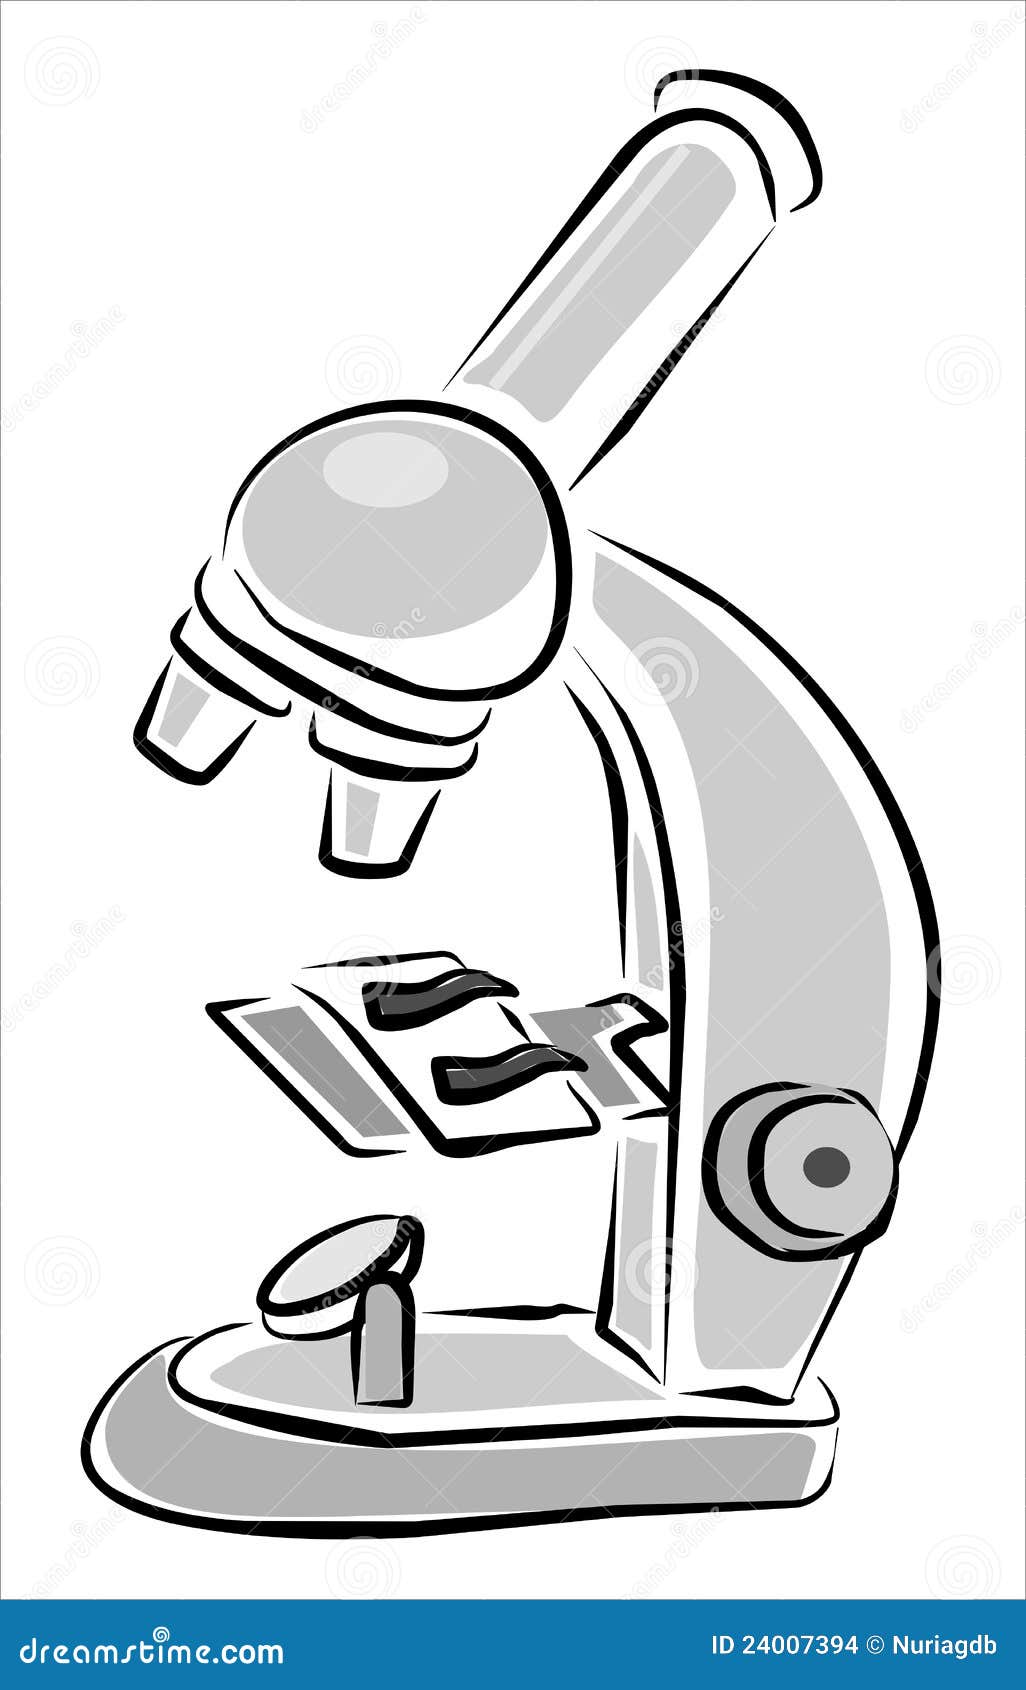 Микроскоп трафарет для детей